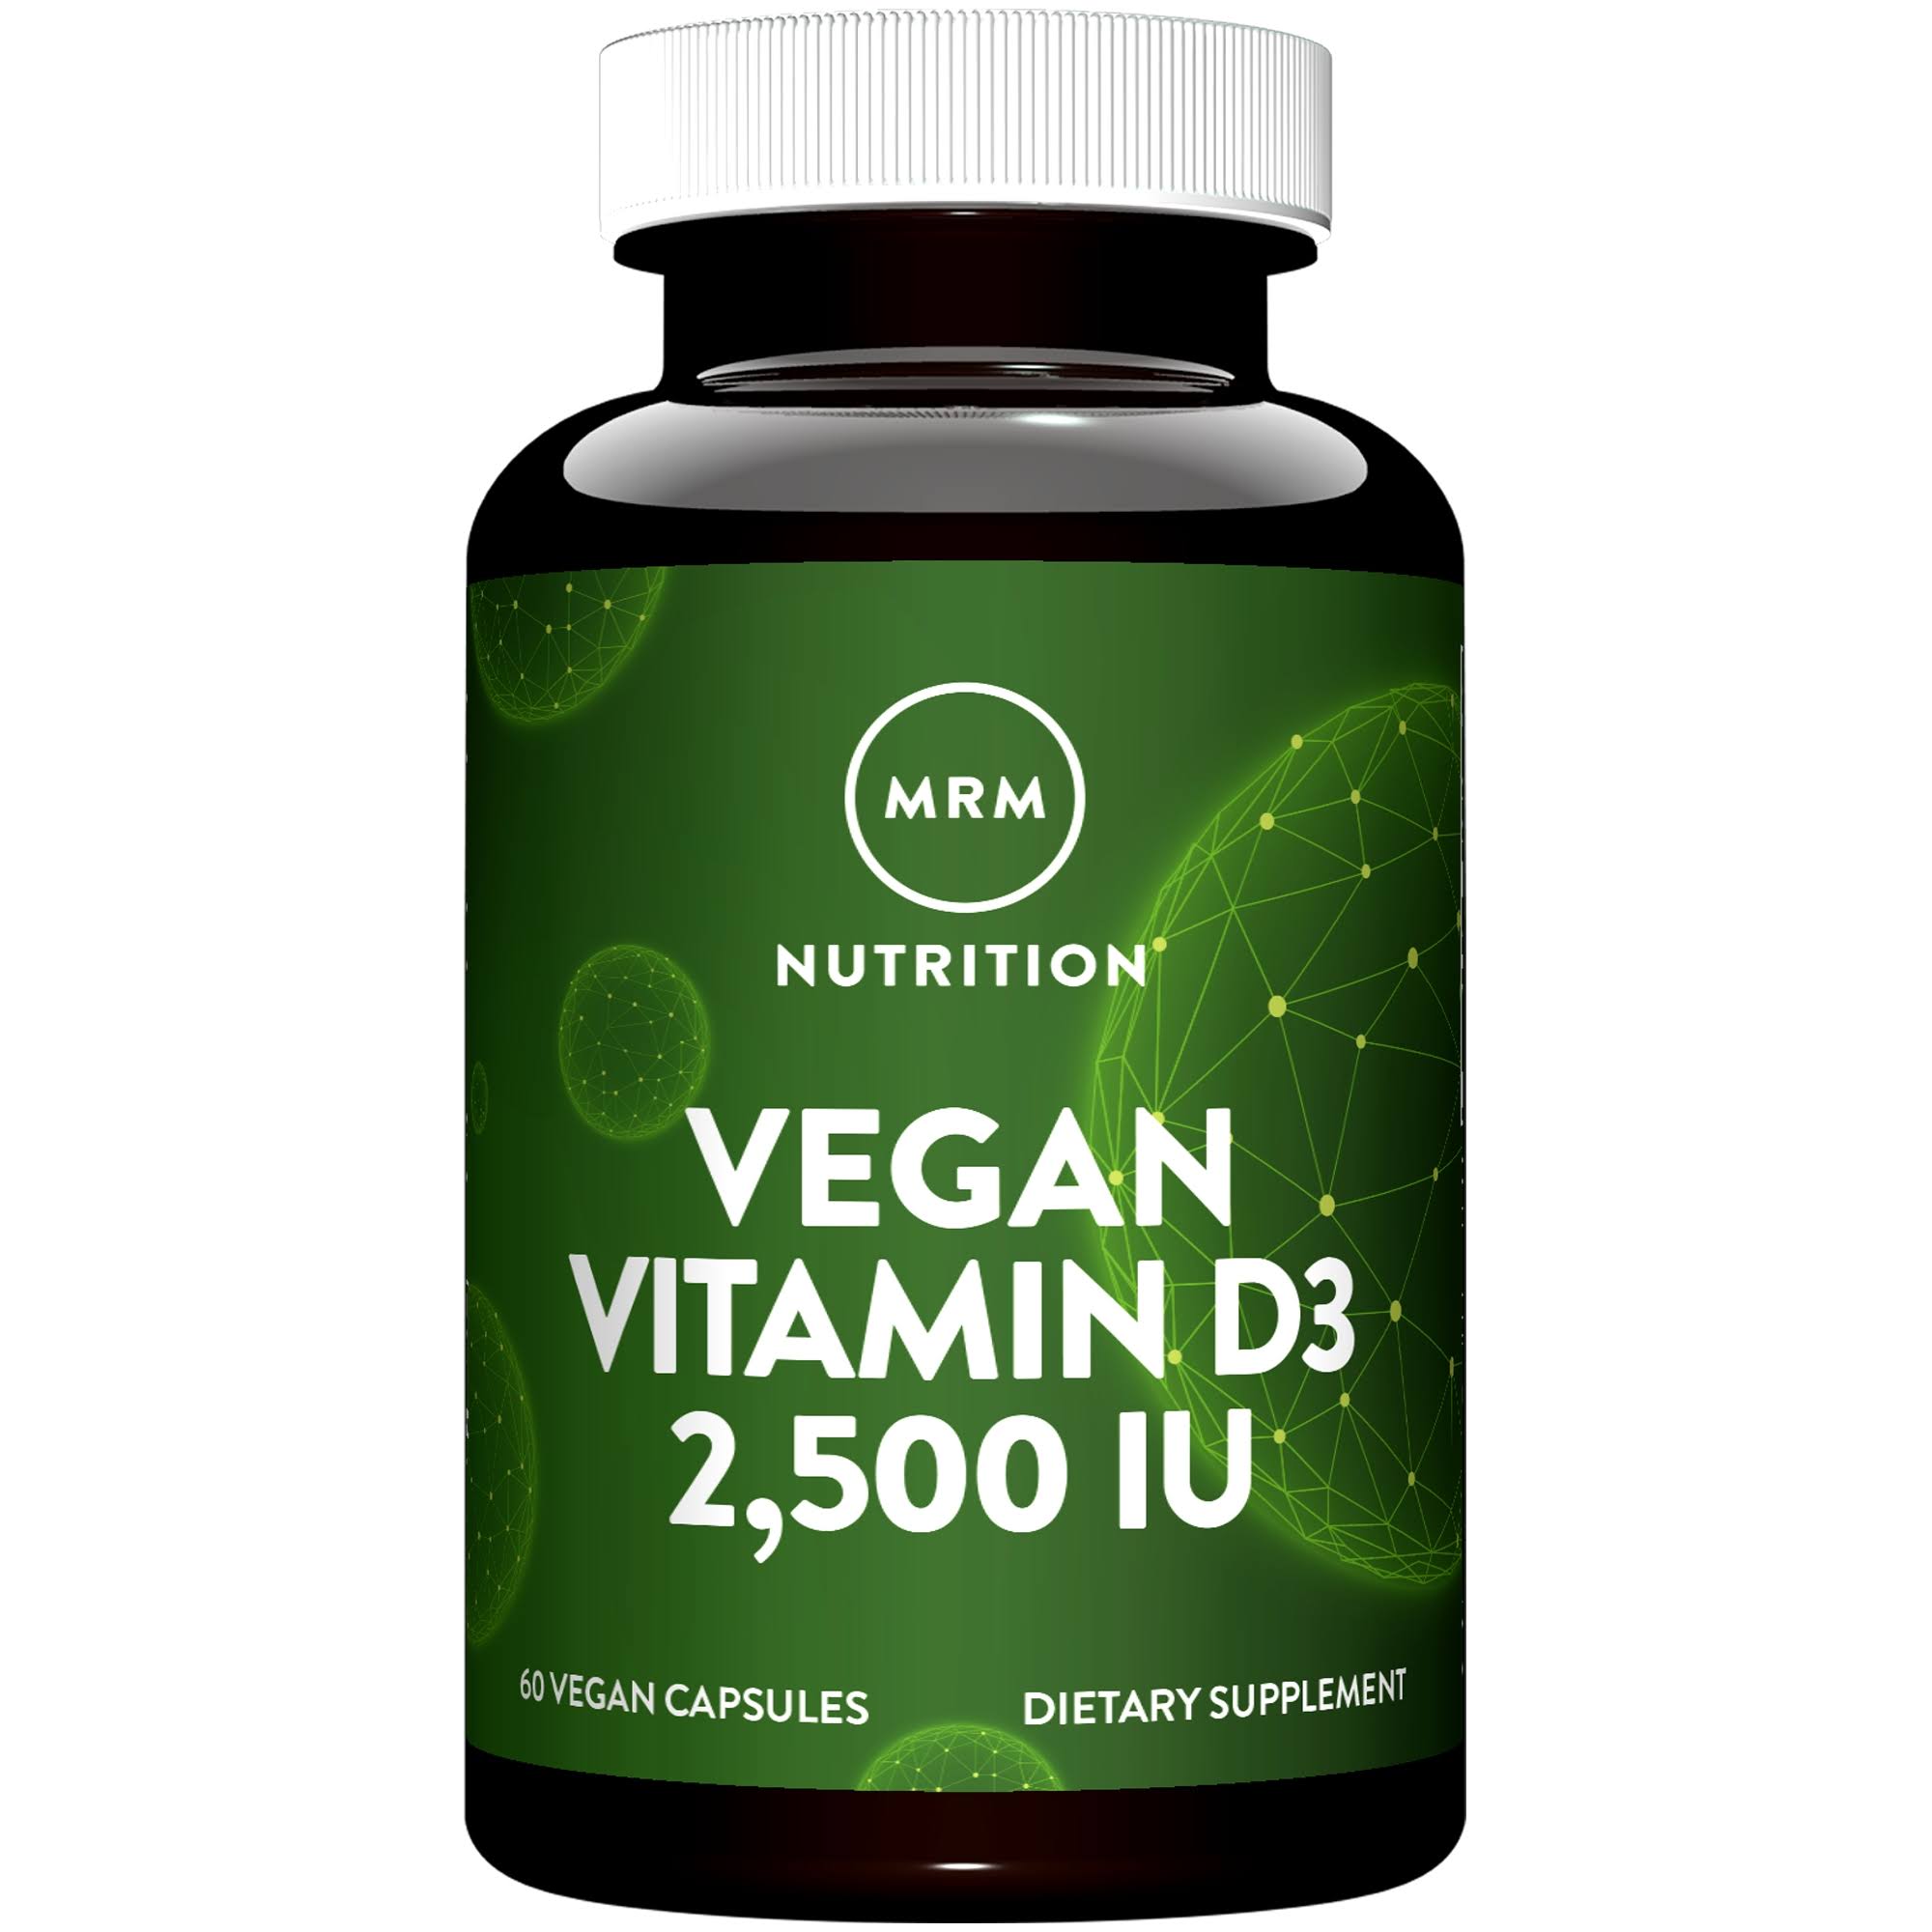 MRM Vegan Vitamin D3 Supplement - 2500IU, 60 Capsules